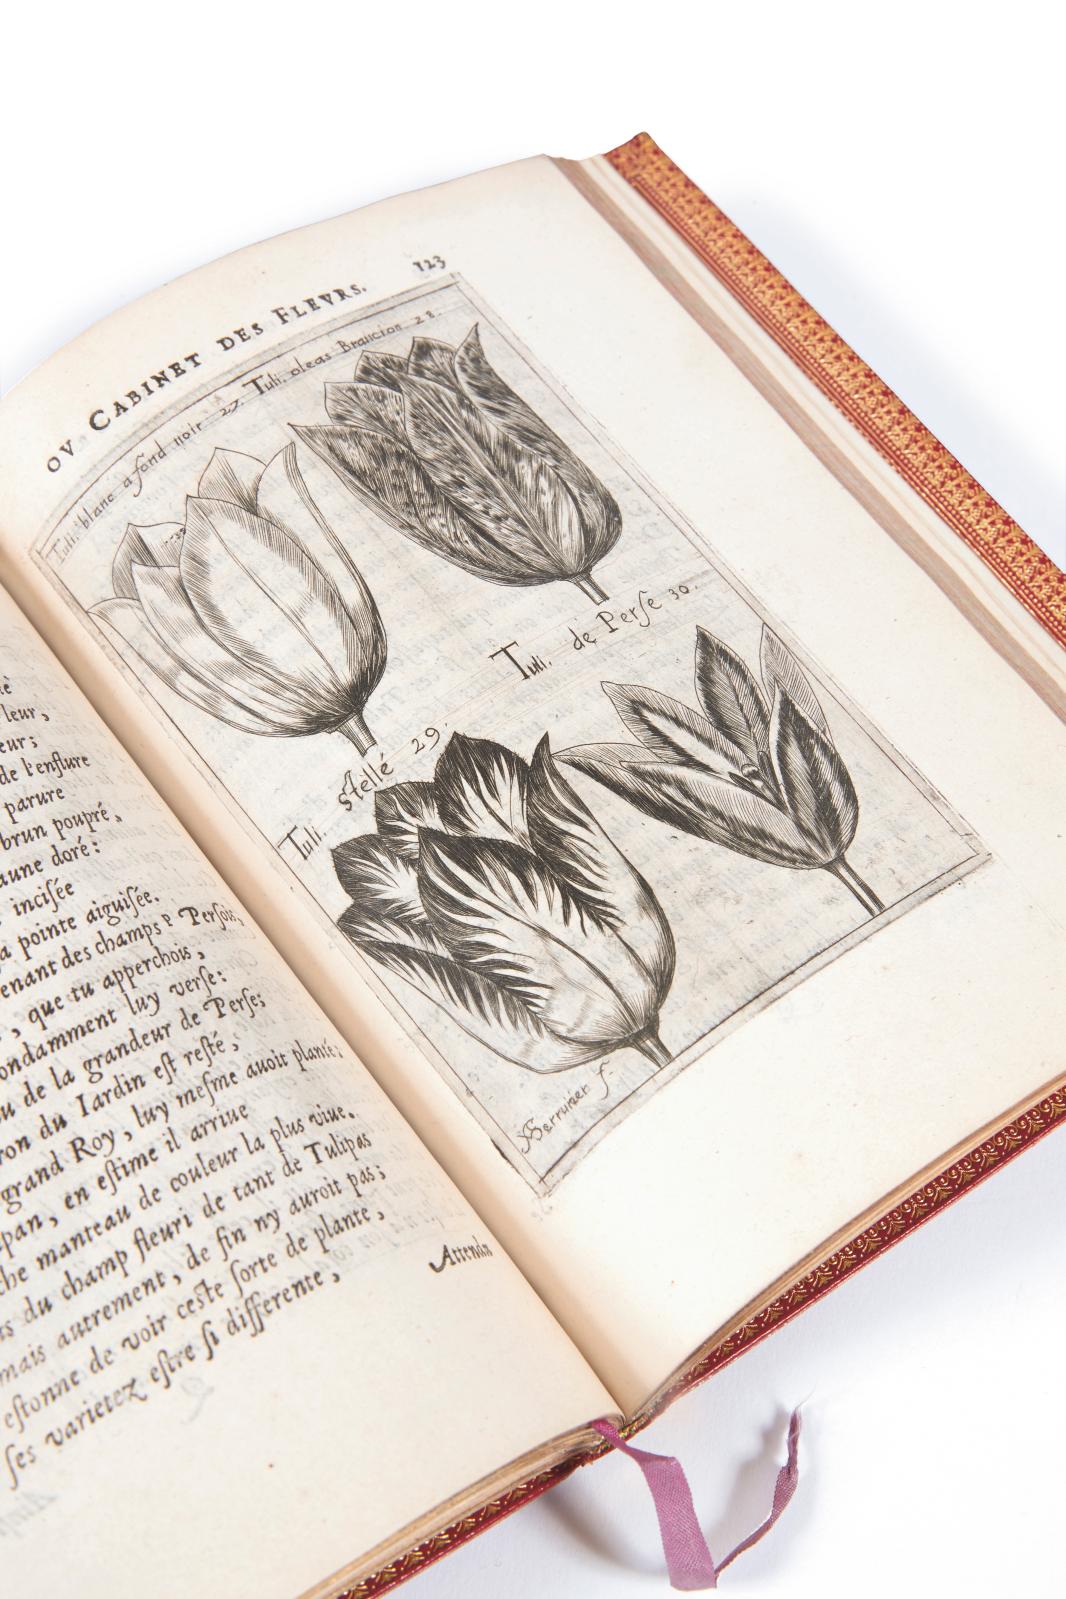 Jean Franeau (1577-1616), Iadin d’Hyver ou Cabinet des fleurs contenant en XXVI elegies les plus rares et signalez fleurons des plus flori